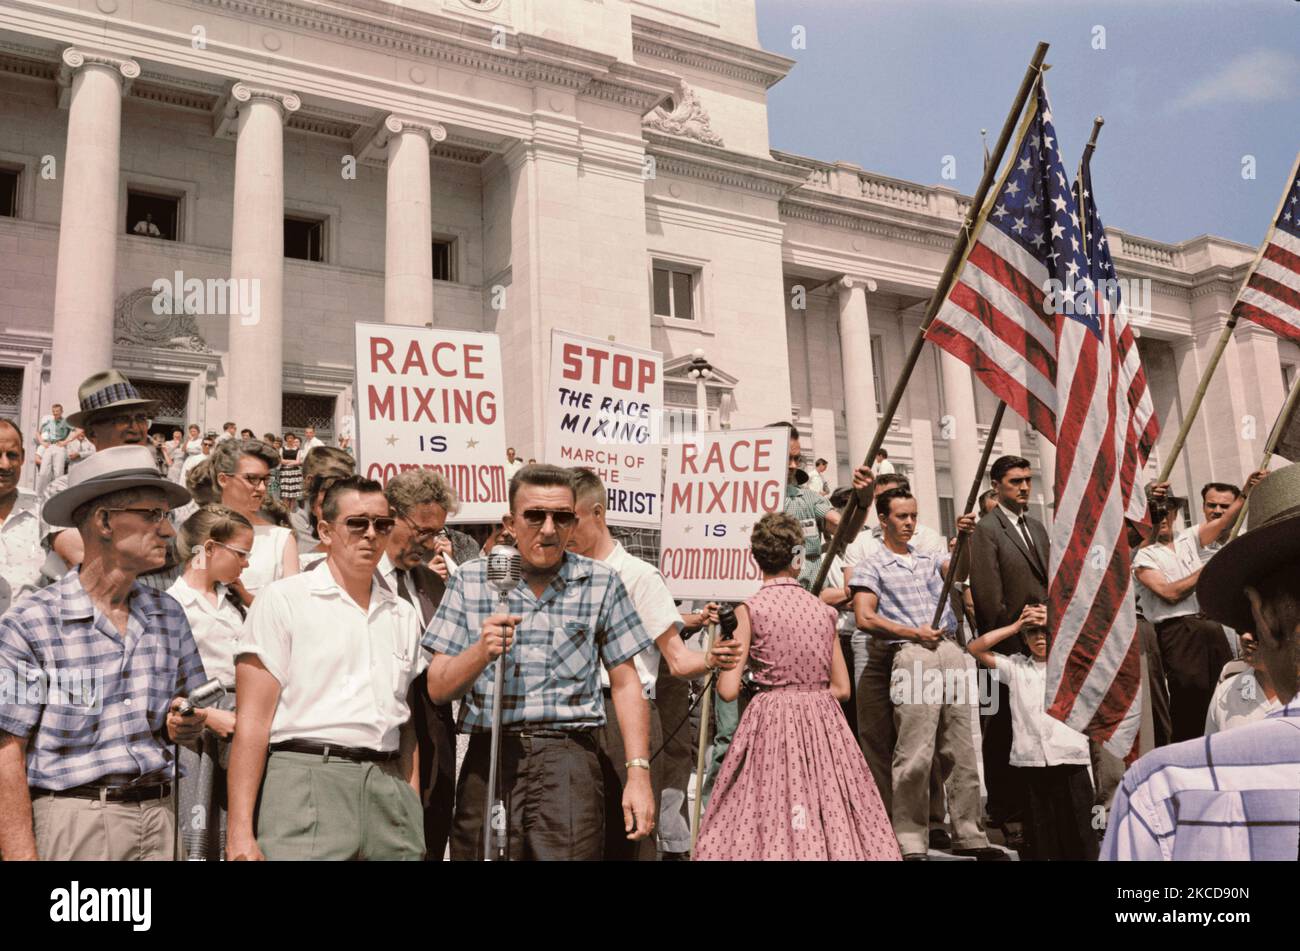 Eine Gruppe von Menschen Kundgebung in Washington, D.C., Protest gegen die Zulassung von der Little Rock Nine, 1959. Stockfoto